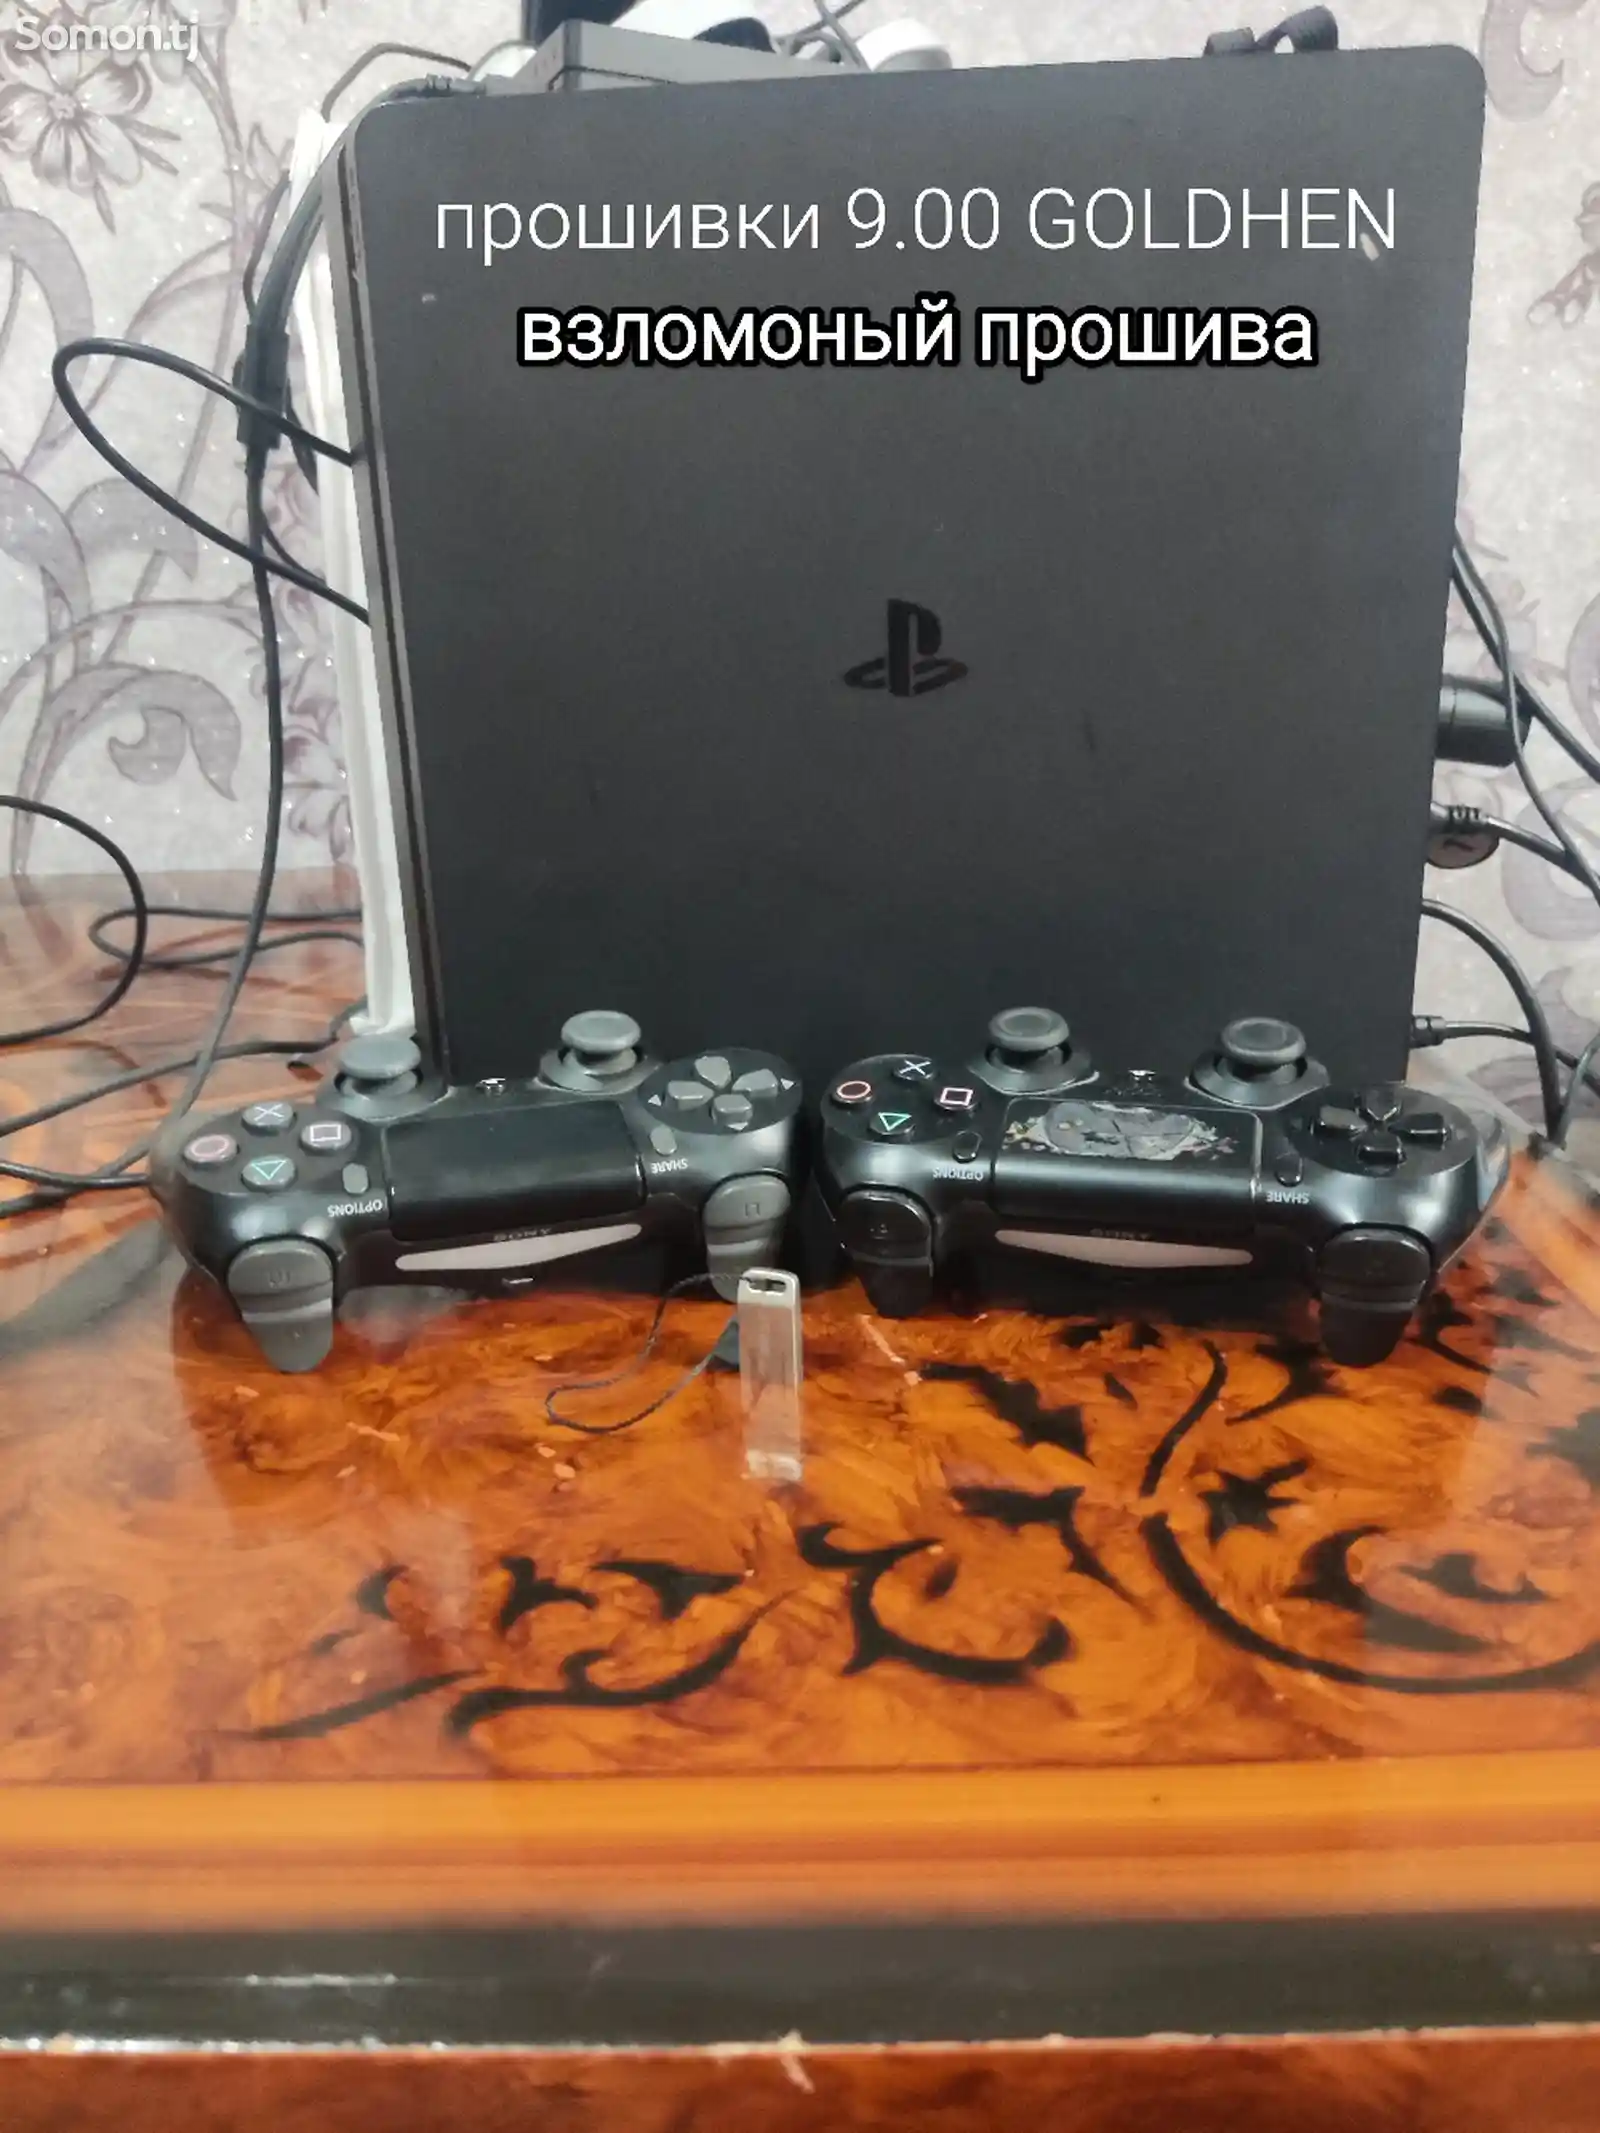 Игровая приставка Sony PlayStation 4 slim GOLDHEN 9.00-1